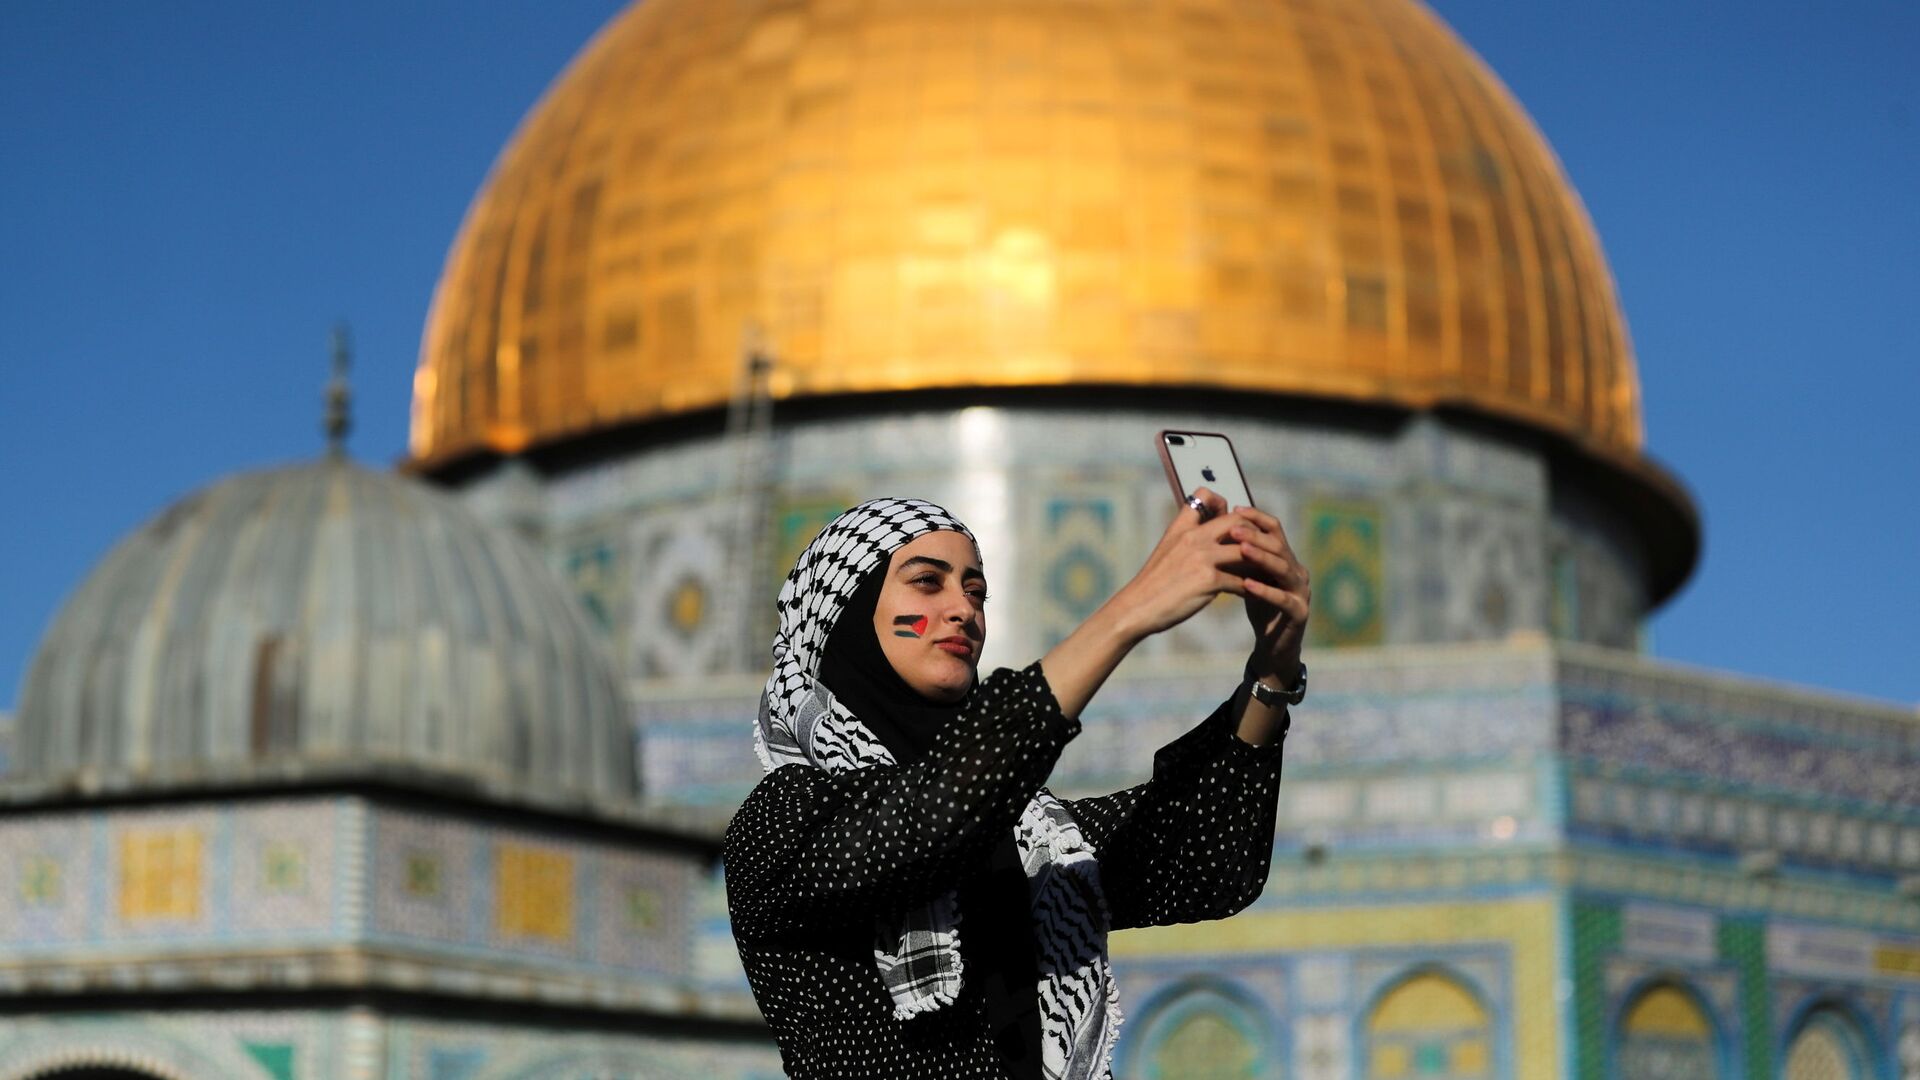 Палестинка снимает селфи на фоне Купола Скалы во время молитвы Ид-аль-Фитр, в Старом городе Иерусалима - Sputnik Азербайджан, 1920, 28.03.2022